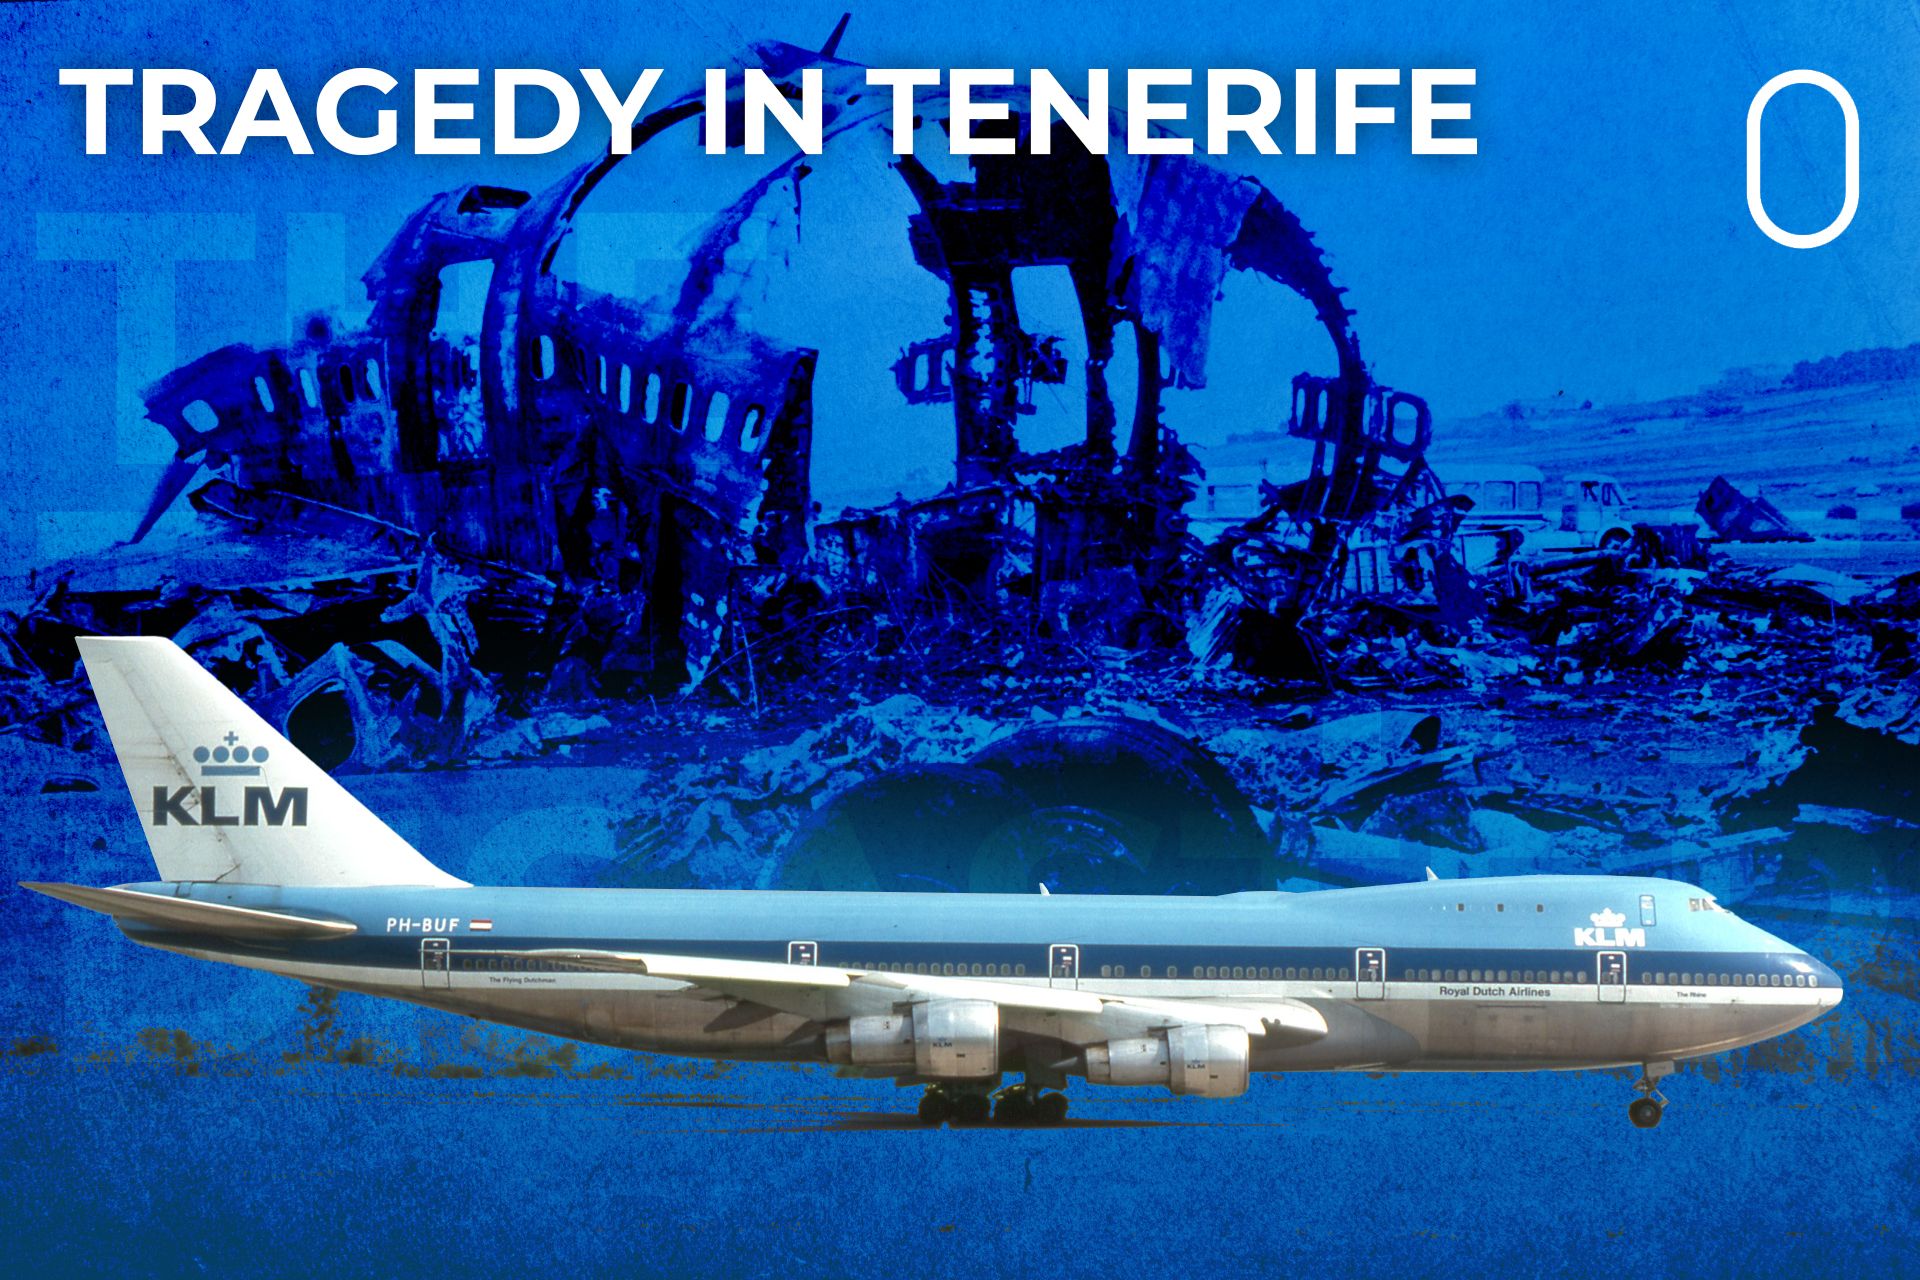 tenerife airport disaster klm